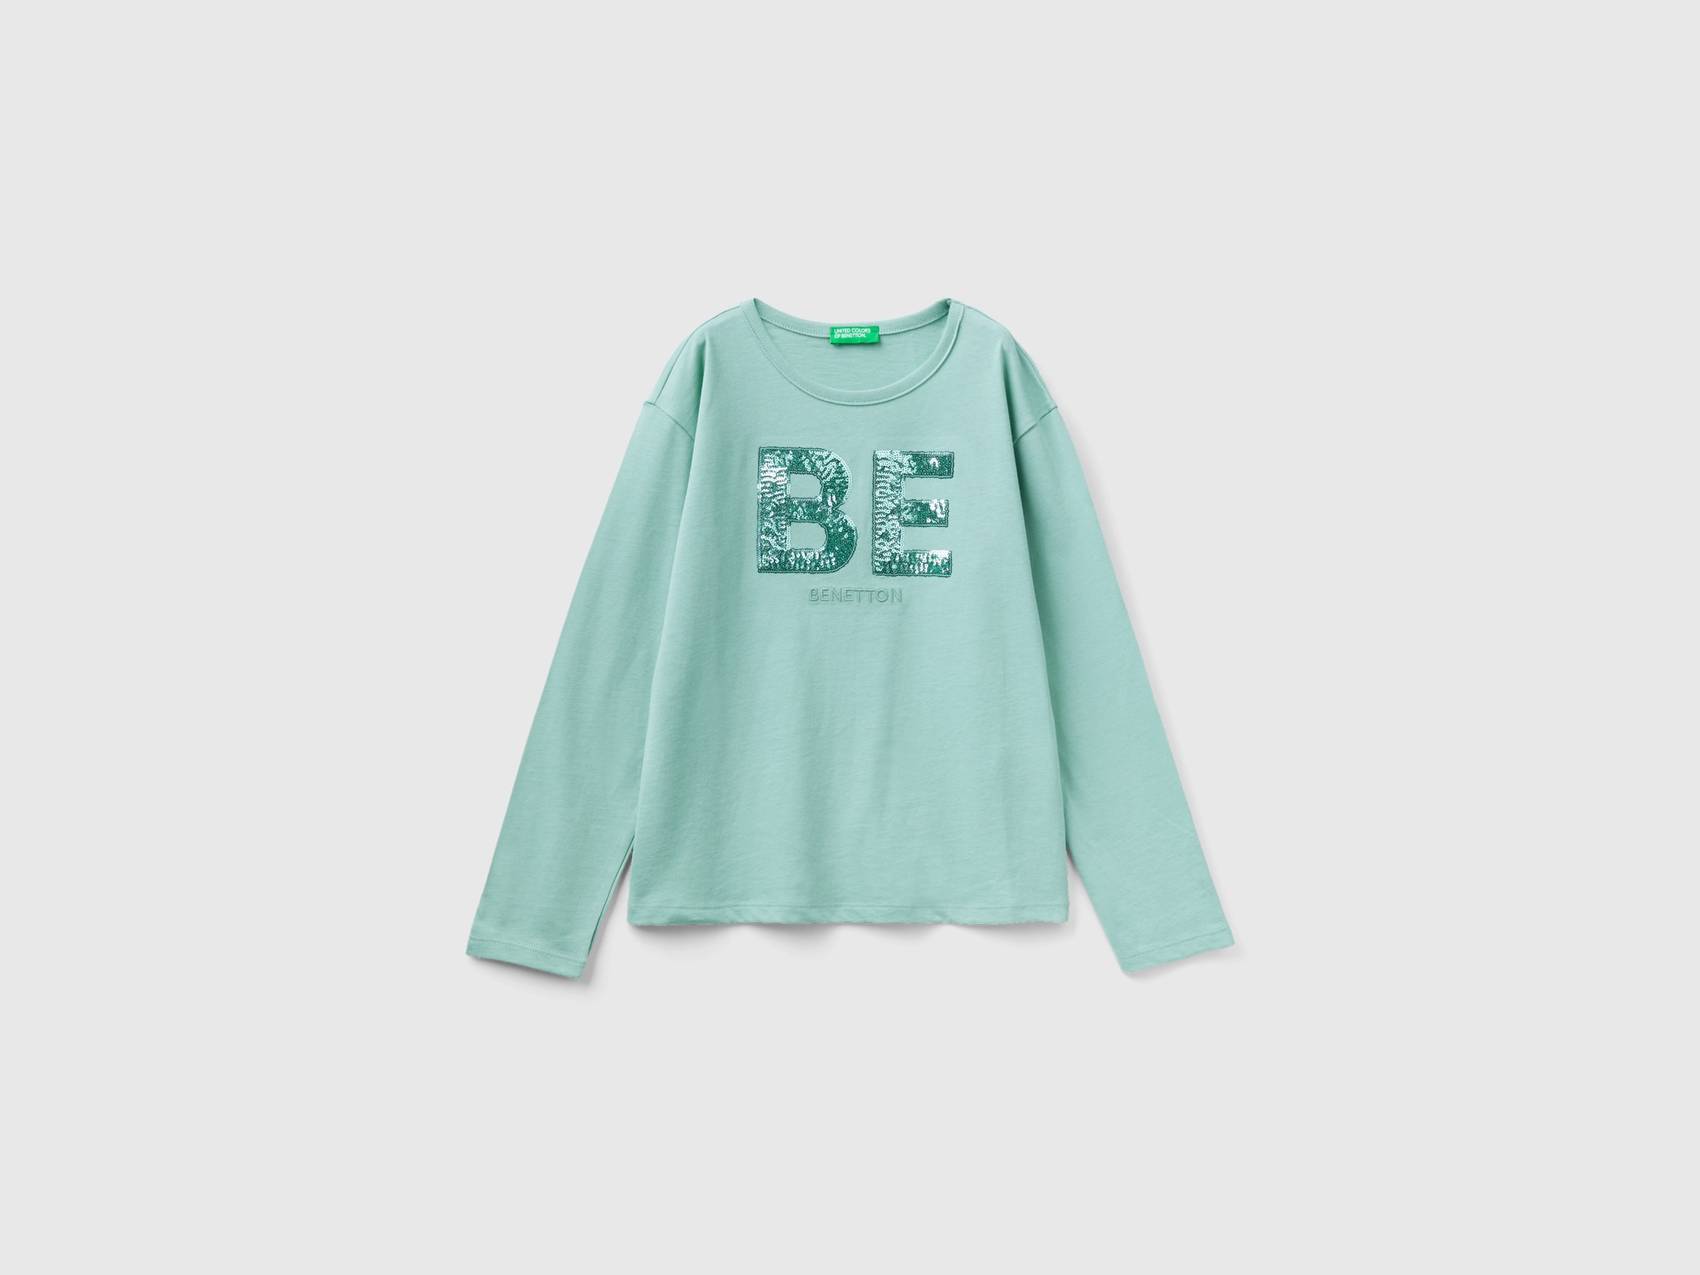 Benetton, T-shirt Aus Warmer Türkisblau, of Pailletten, größe Colors L, | Benetton Mit Bio-baumwolle United female